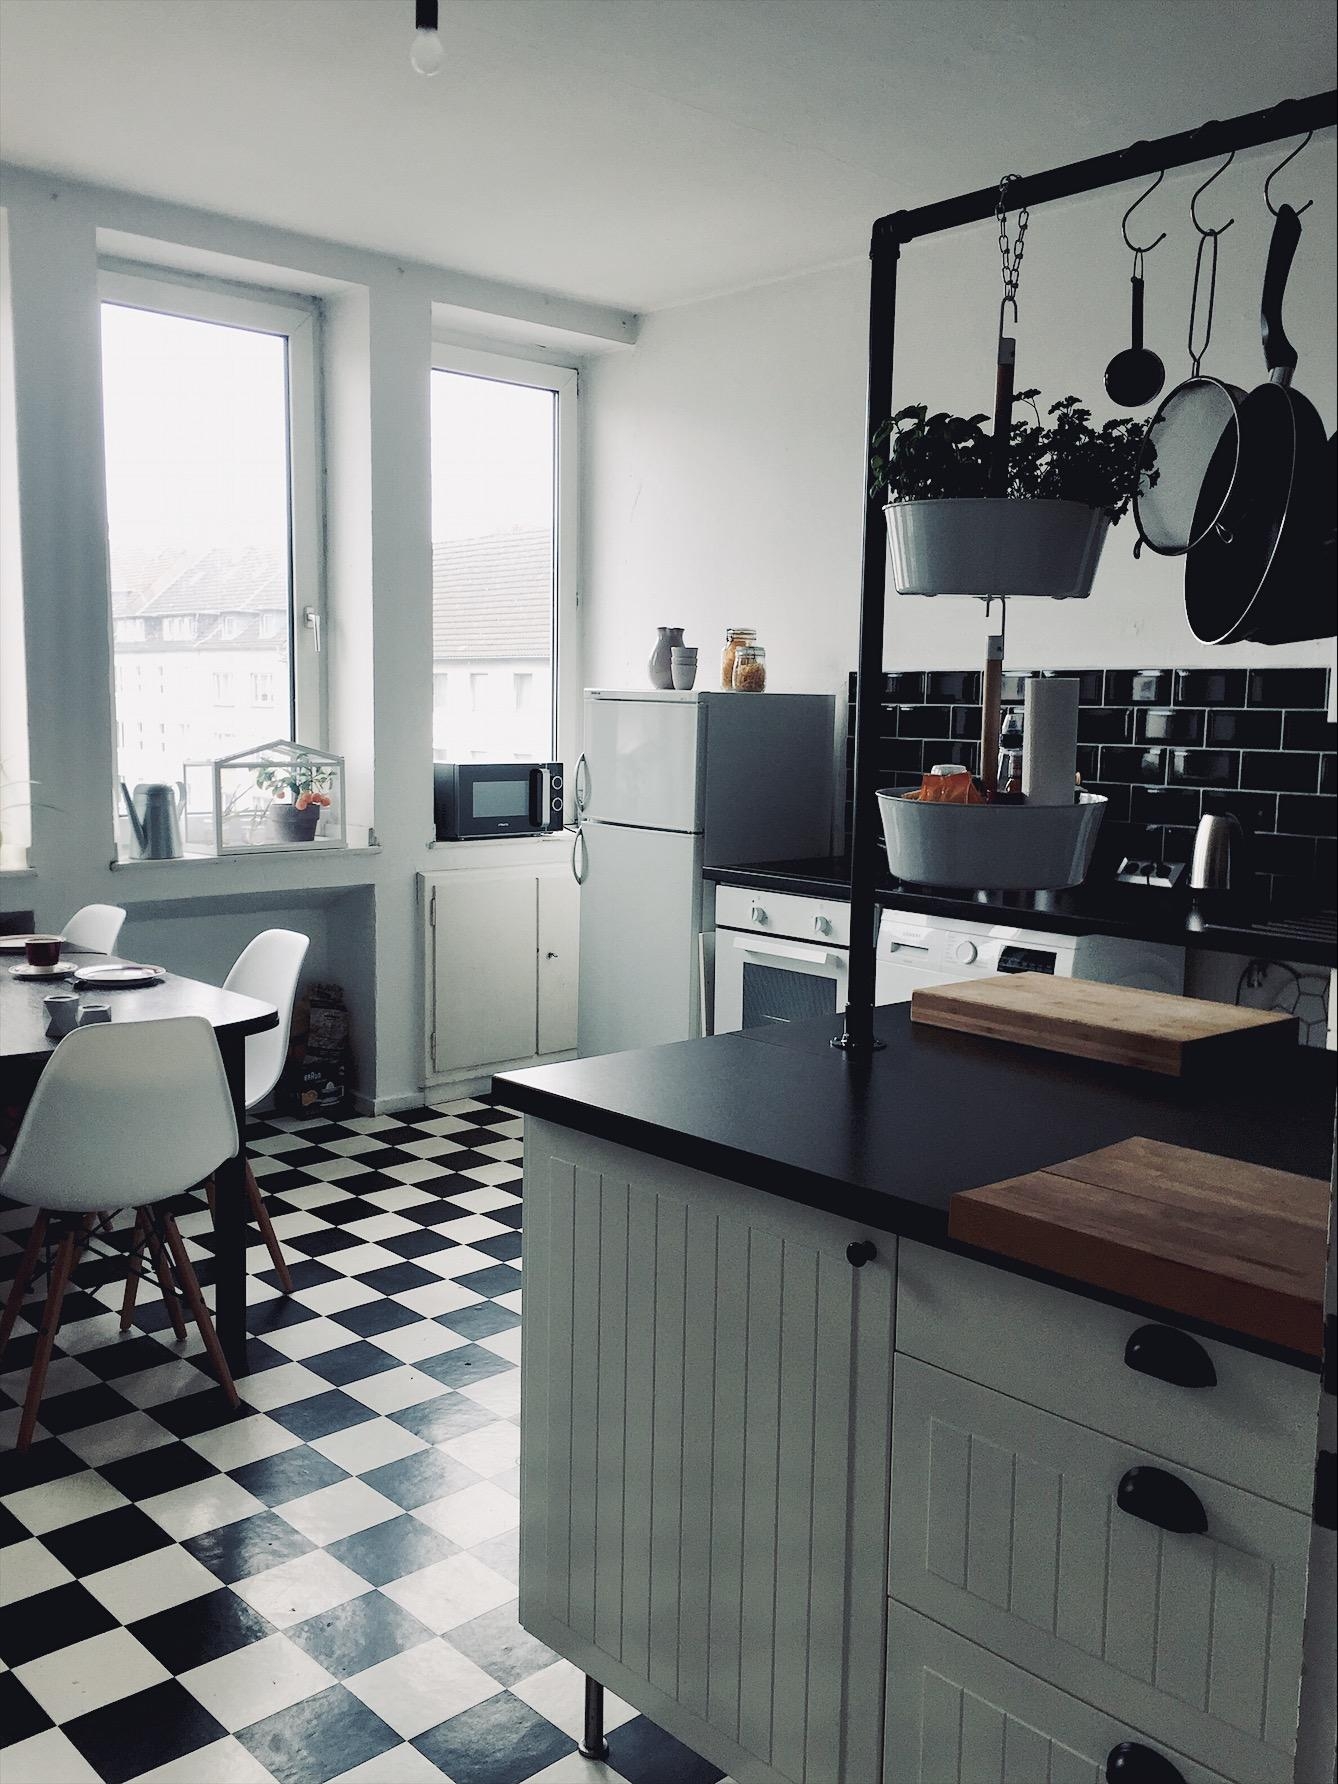 Mein allerliebster Platz in der Wohnung -meine Küche mit dem perfekten Mix aus alt und neu 🥰
#livingchallenge #esstisch